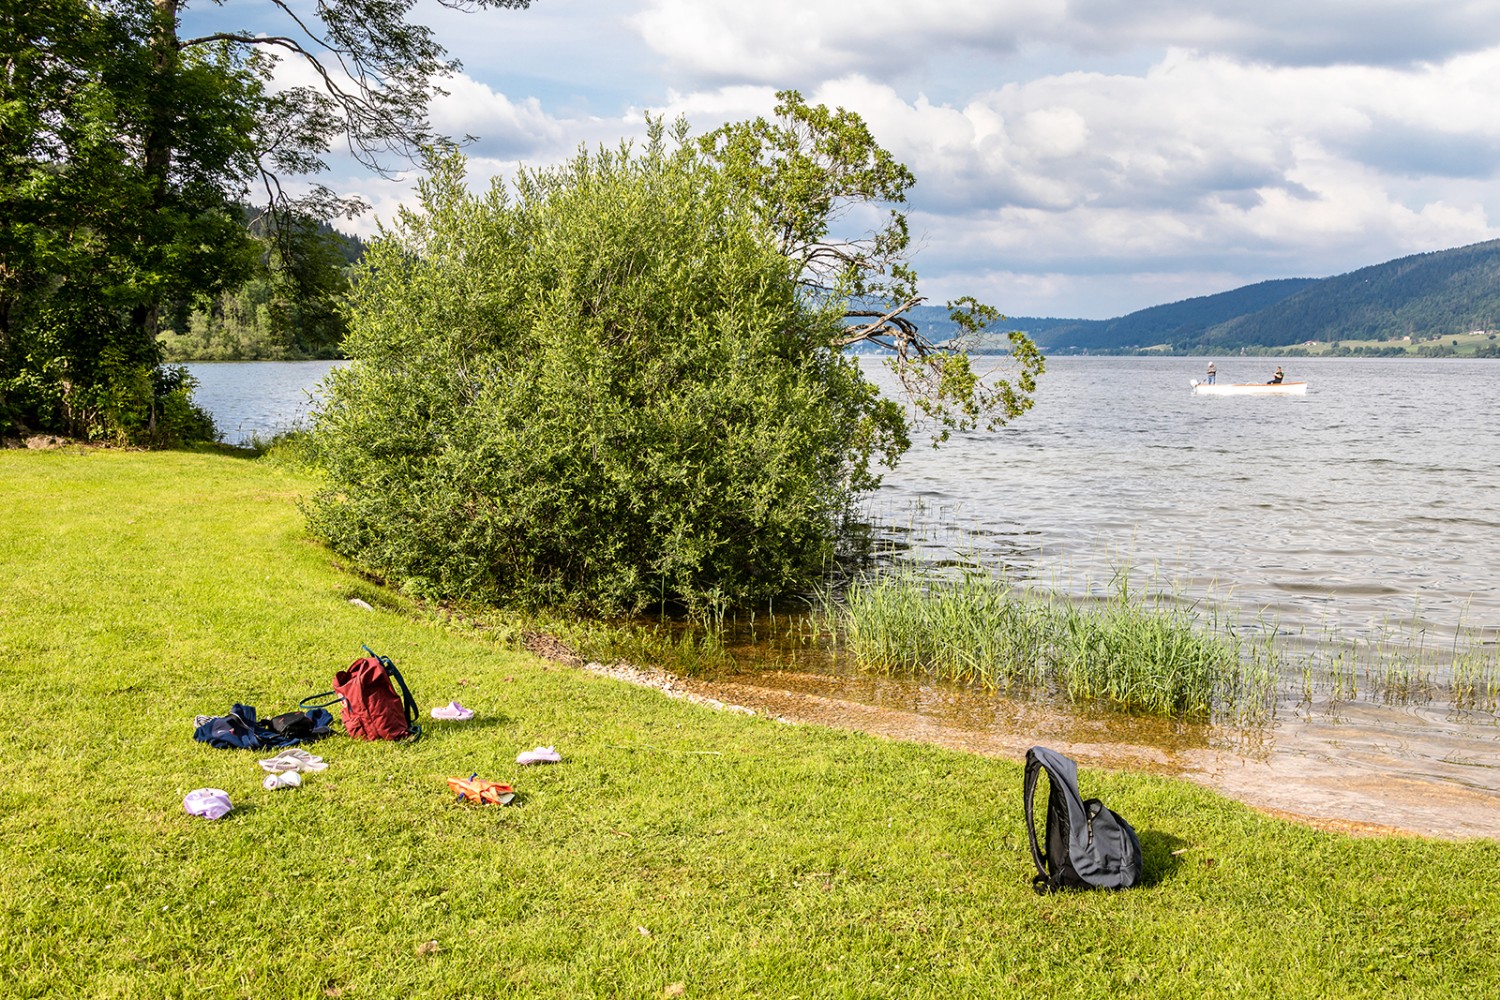 Am Ende der Wanderung wartet ein Bad im Lac de Joux. Bild: Severin Nowacki